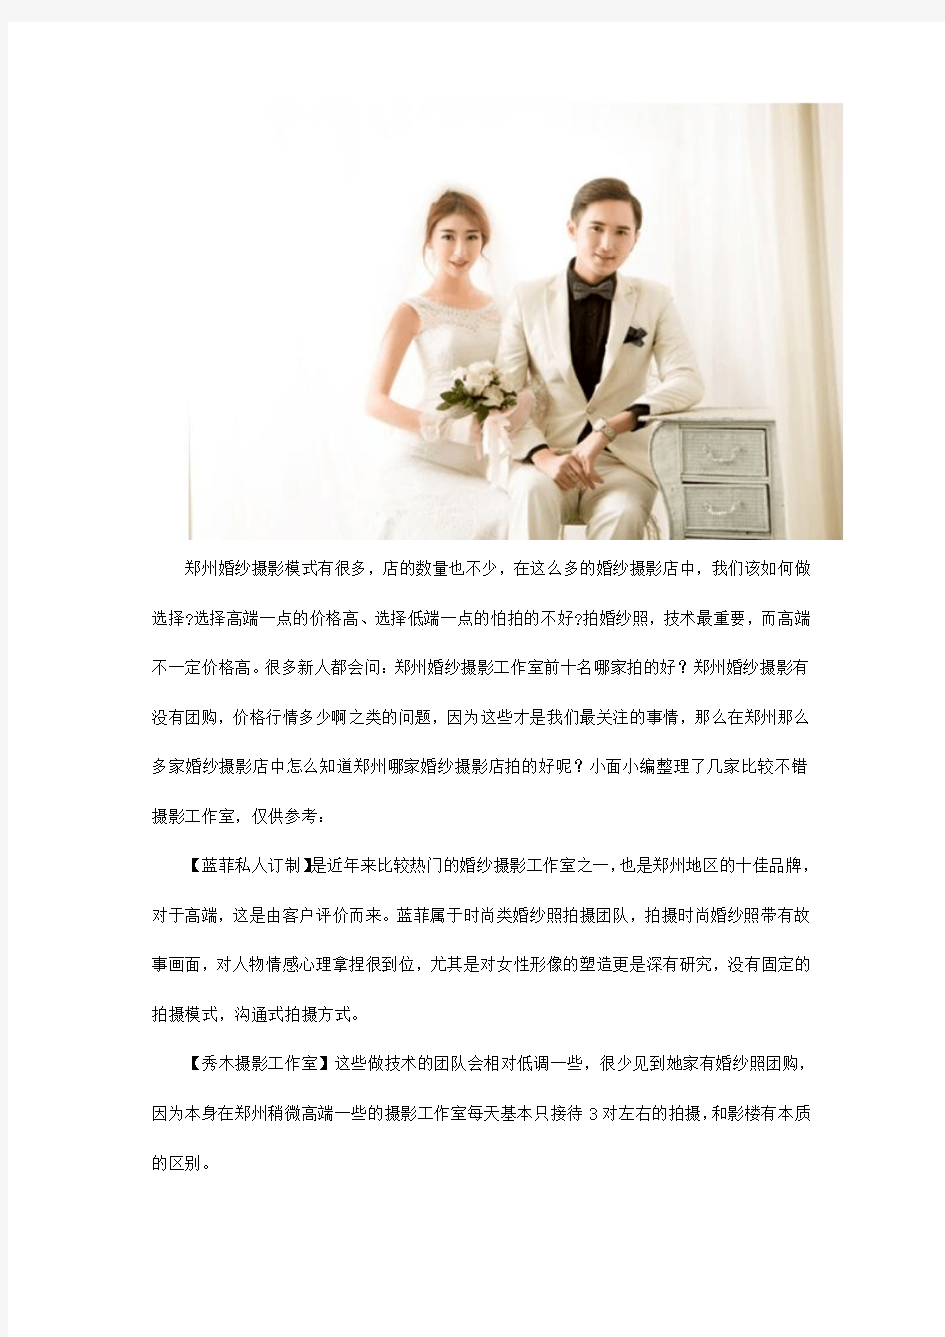 郑州婚纱摄影前十名排名